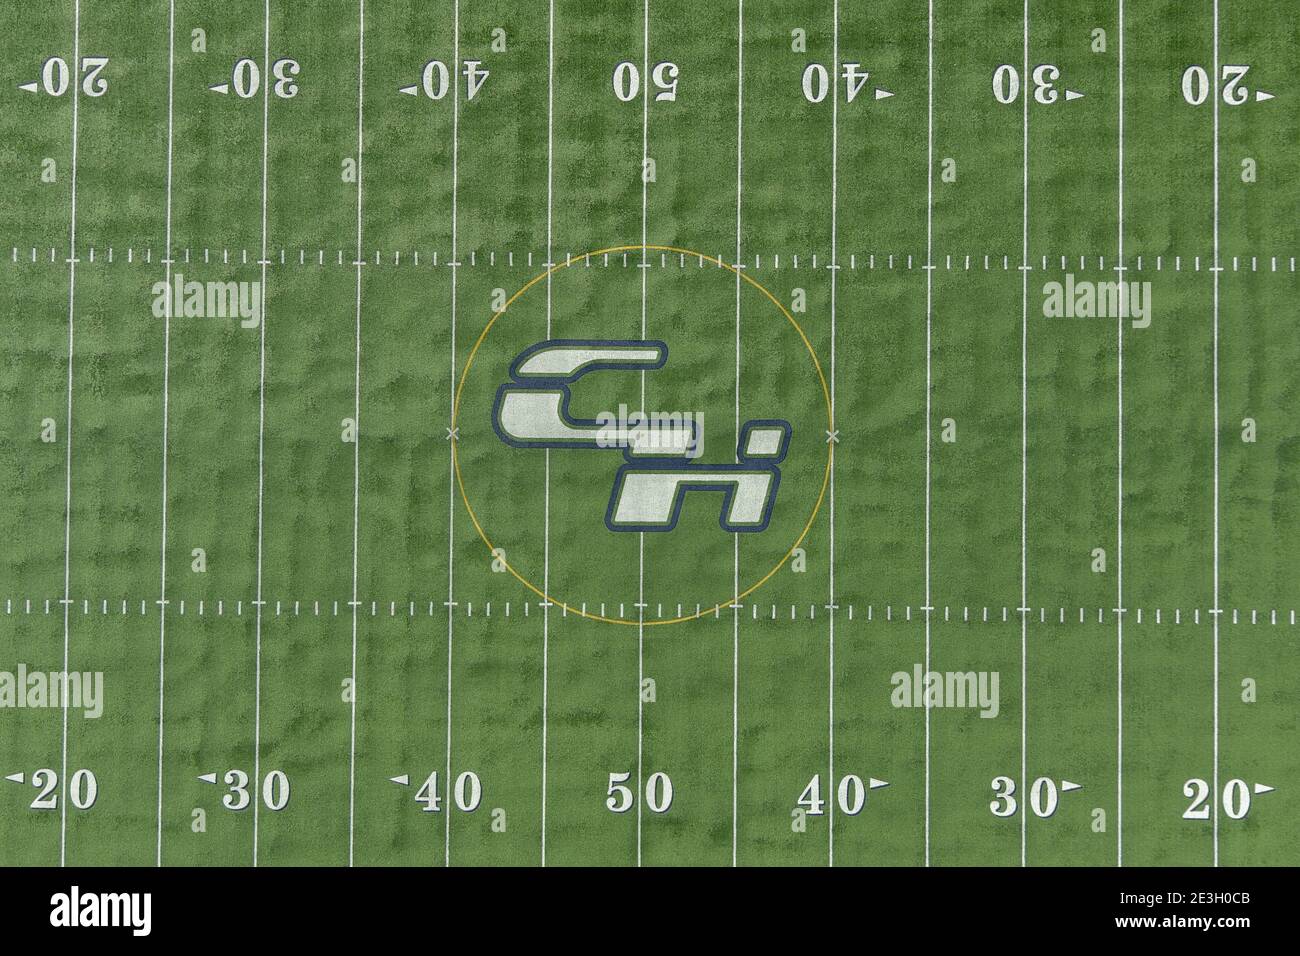 Eine detaillierte Ansicht des Chino Hills High School Logo auf dem Mittelfeld des Fußballfeldes, Sonntag, 17. Januar 2021, in Chino Hills, Kalifornien. Stockfoto